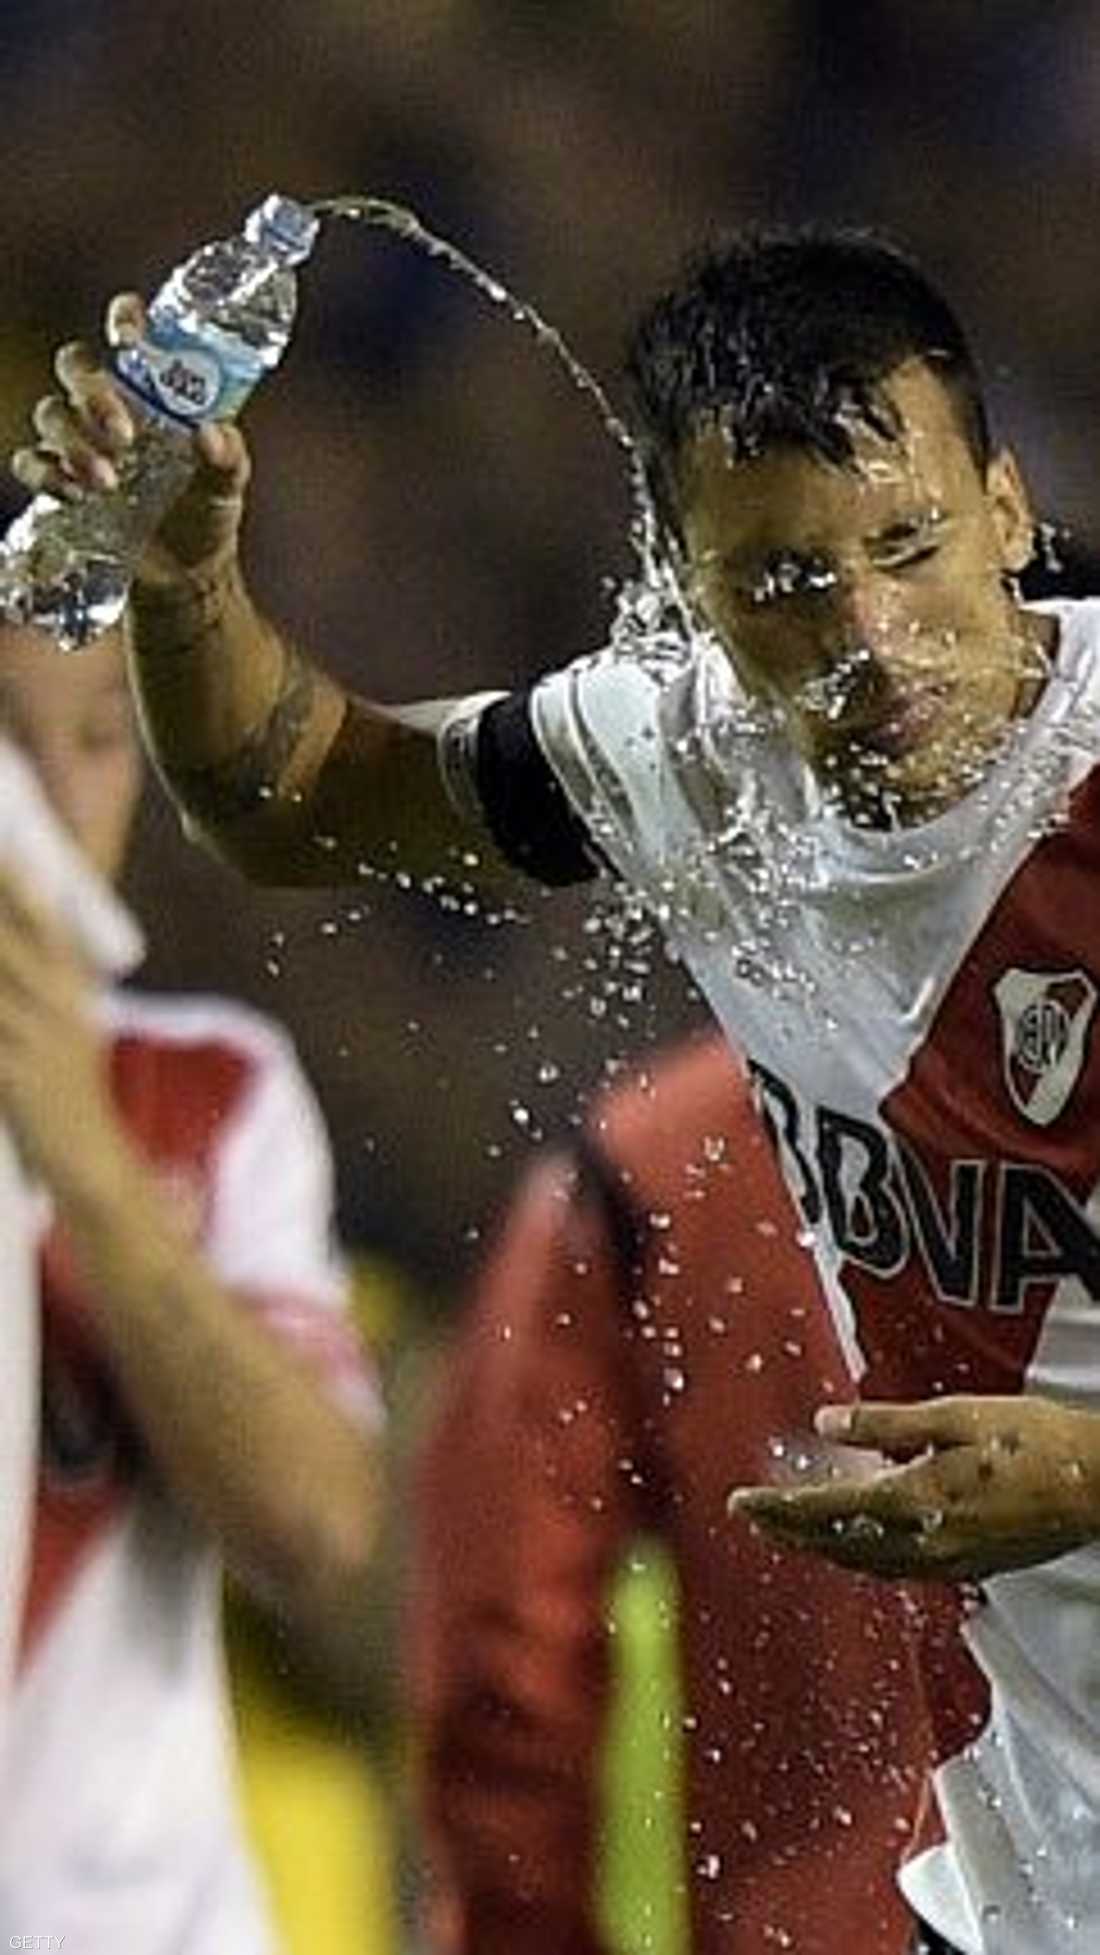 لاعب من ريفر بليت يغسل وجهه بالماء قبل قرار إلغاء المباراة أمام بوكا جونيورز